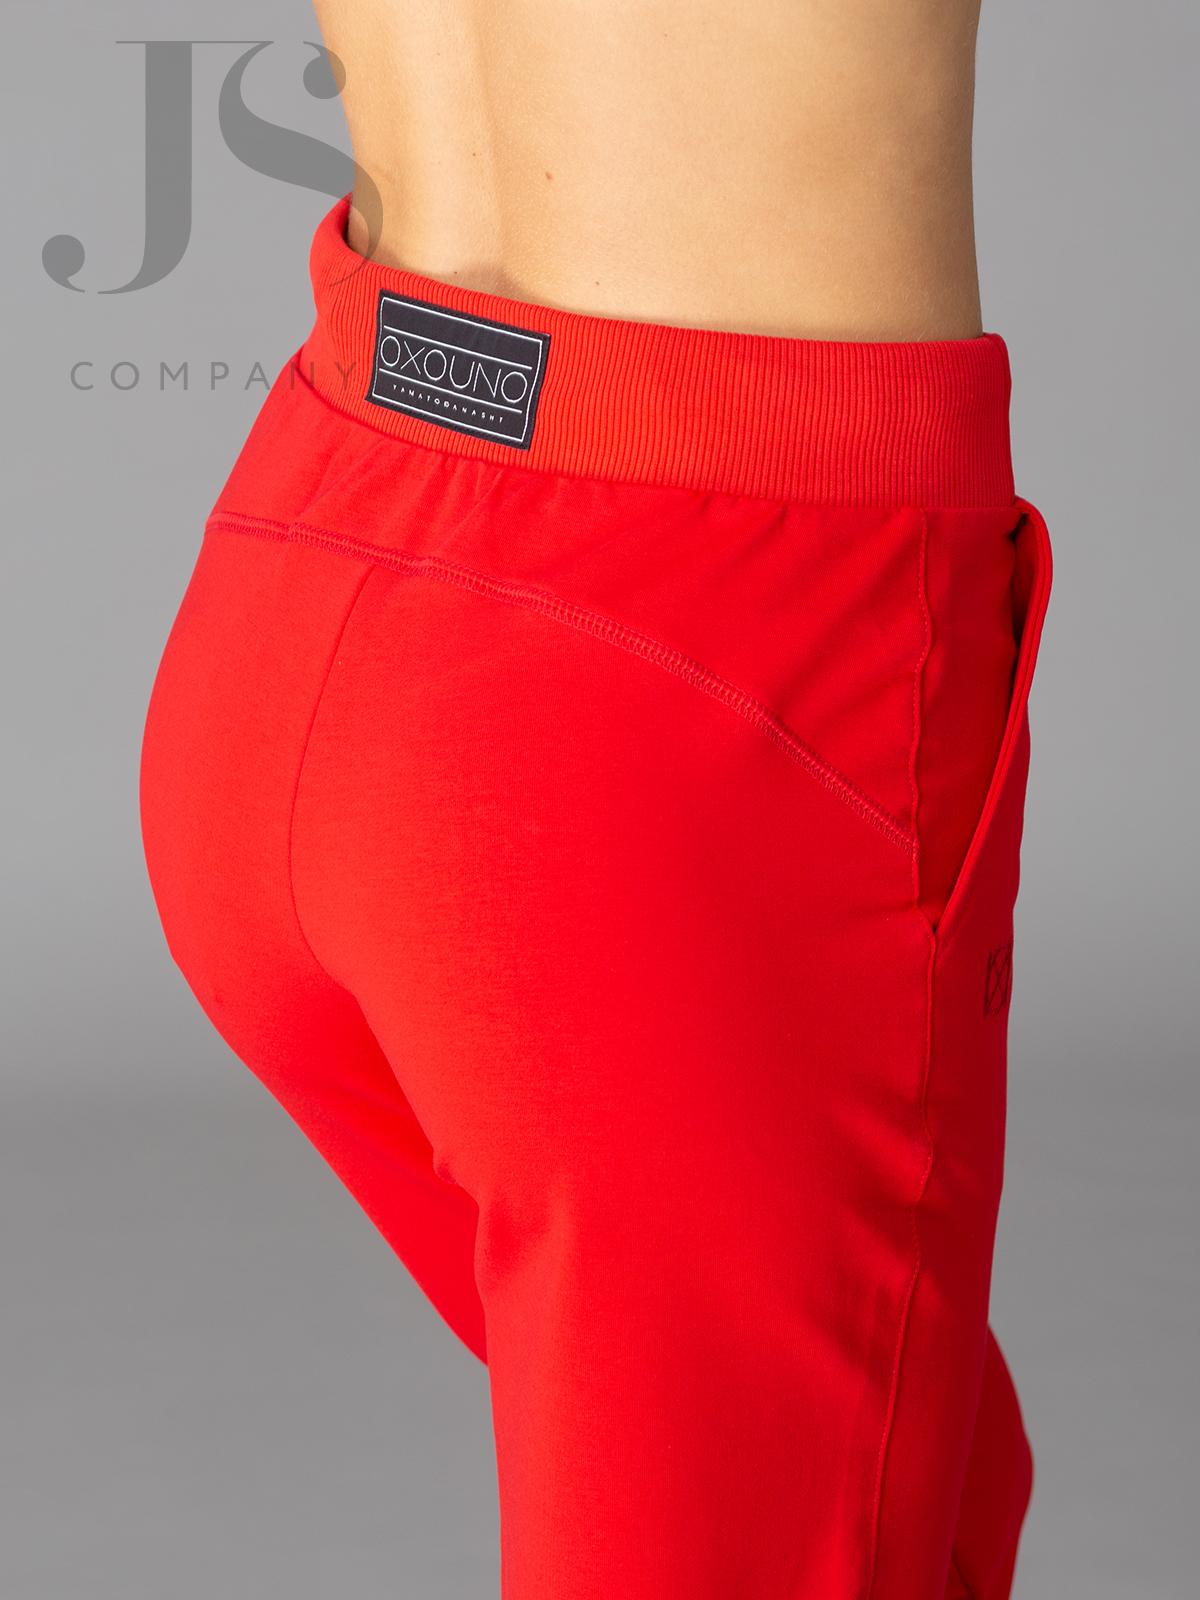 Брюки Oxouno OXO 2384-485 спортивные брюки красный